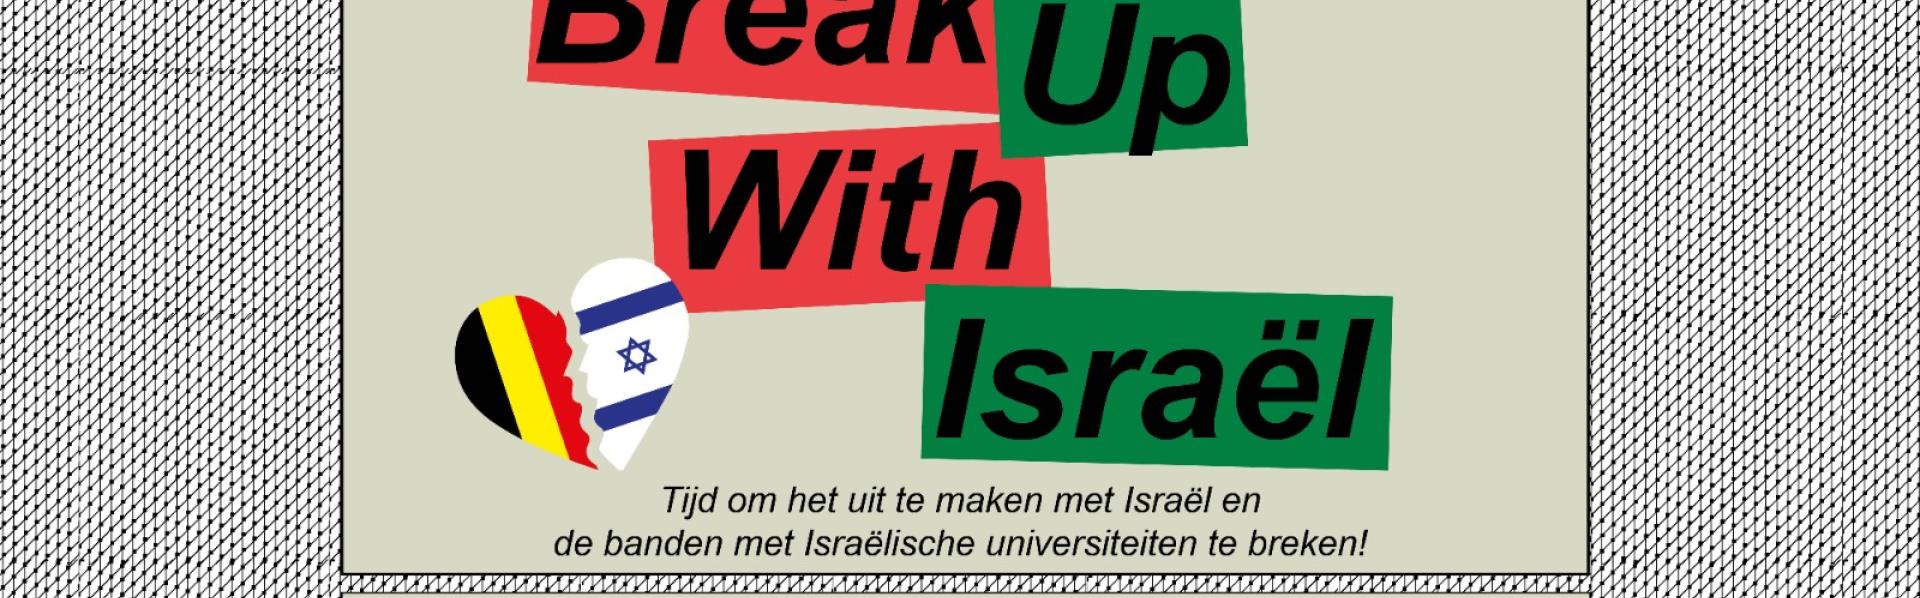 Break with Israel protestactie Antwerpen